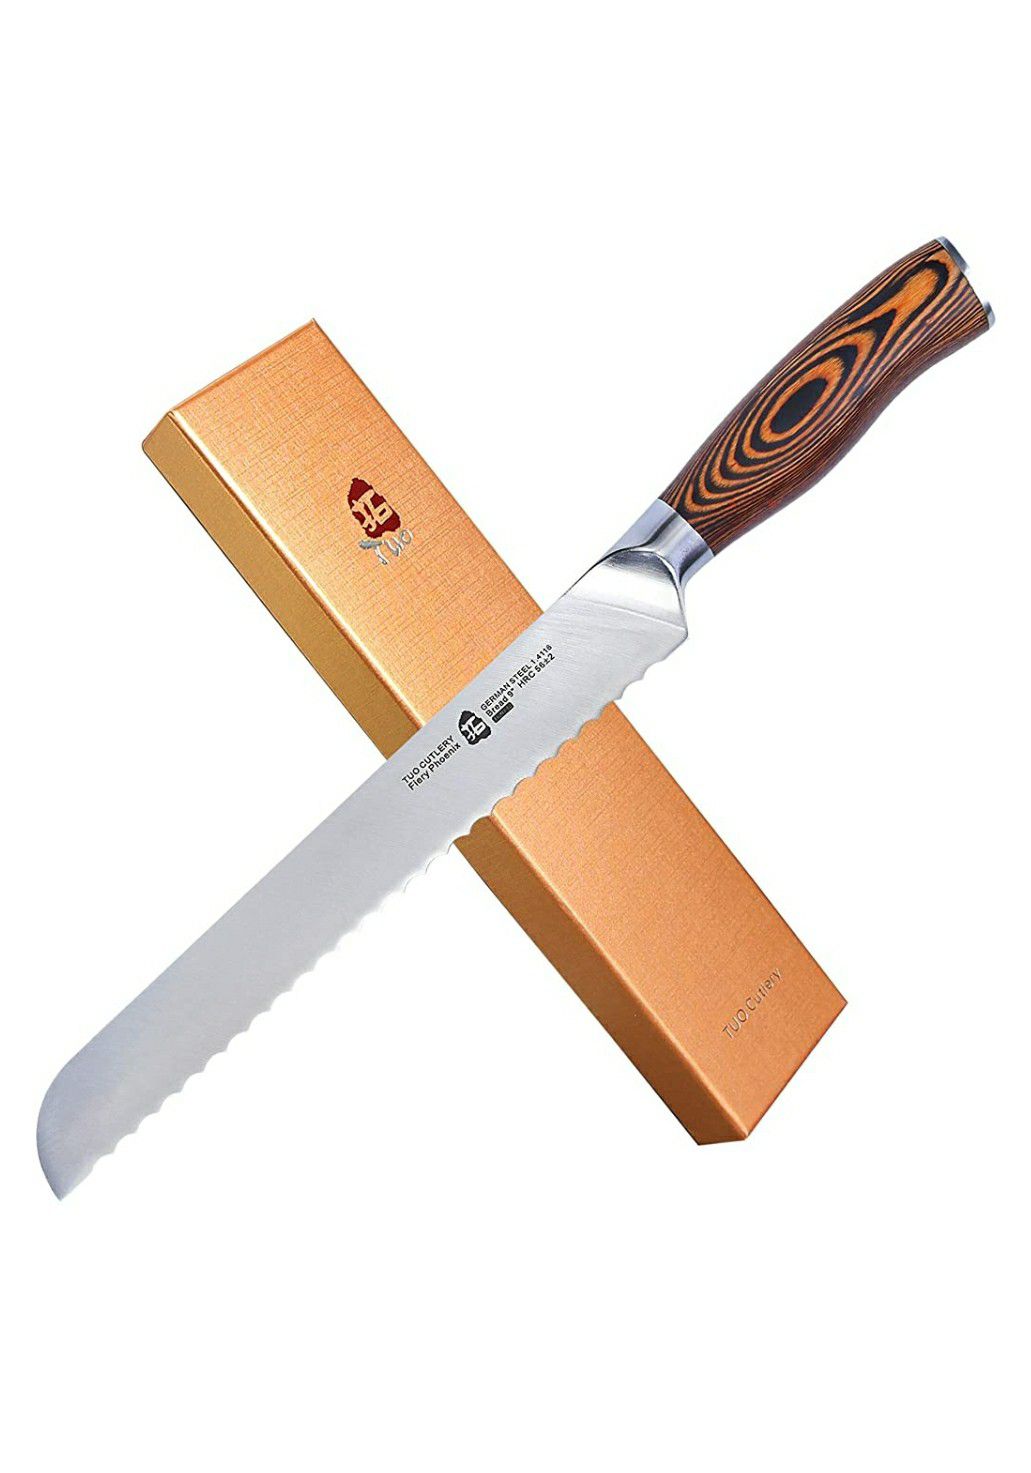 TUO Cutlery Bread knife / Cuchillo de pan marca TUO